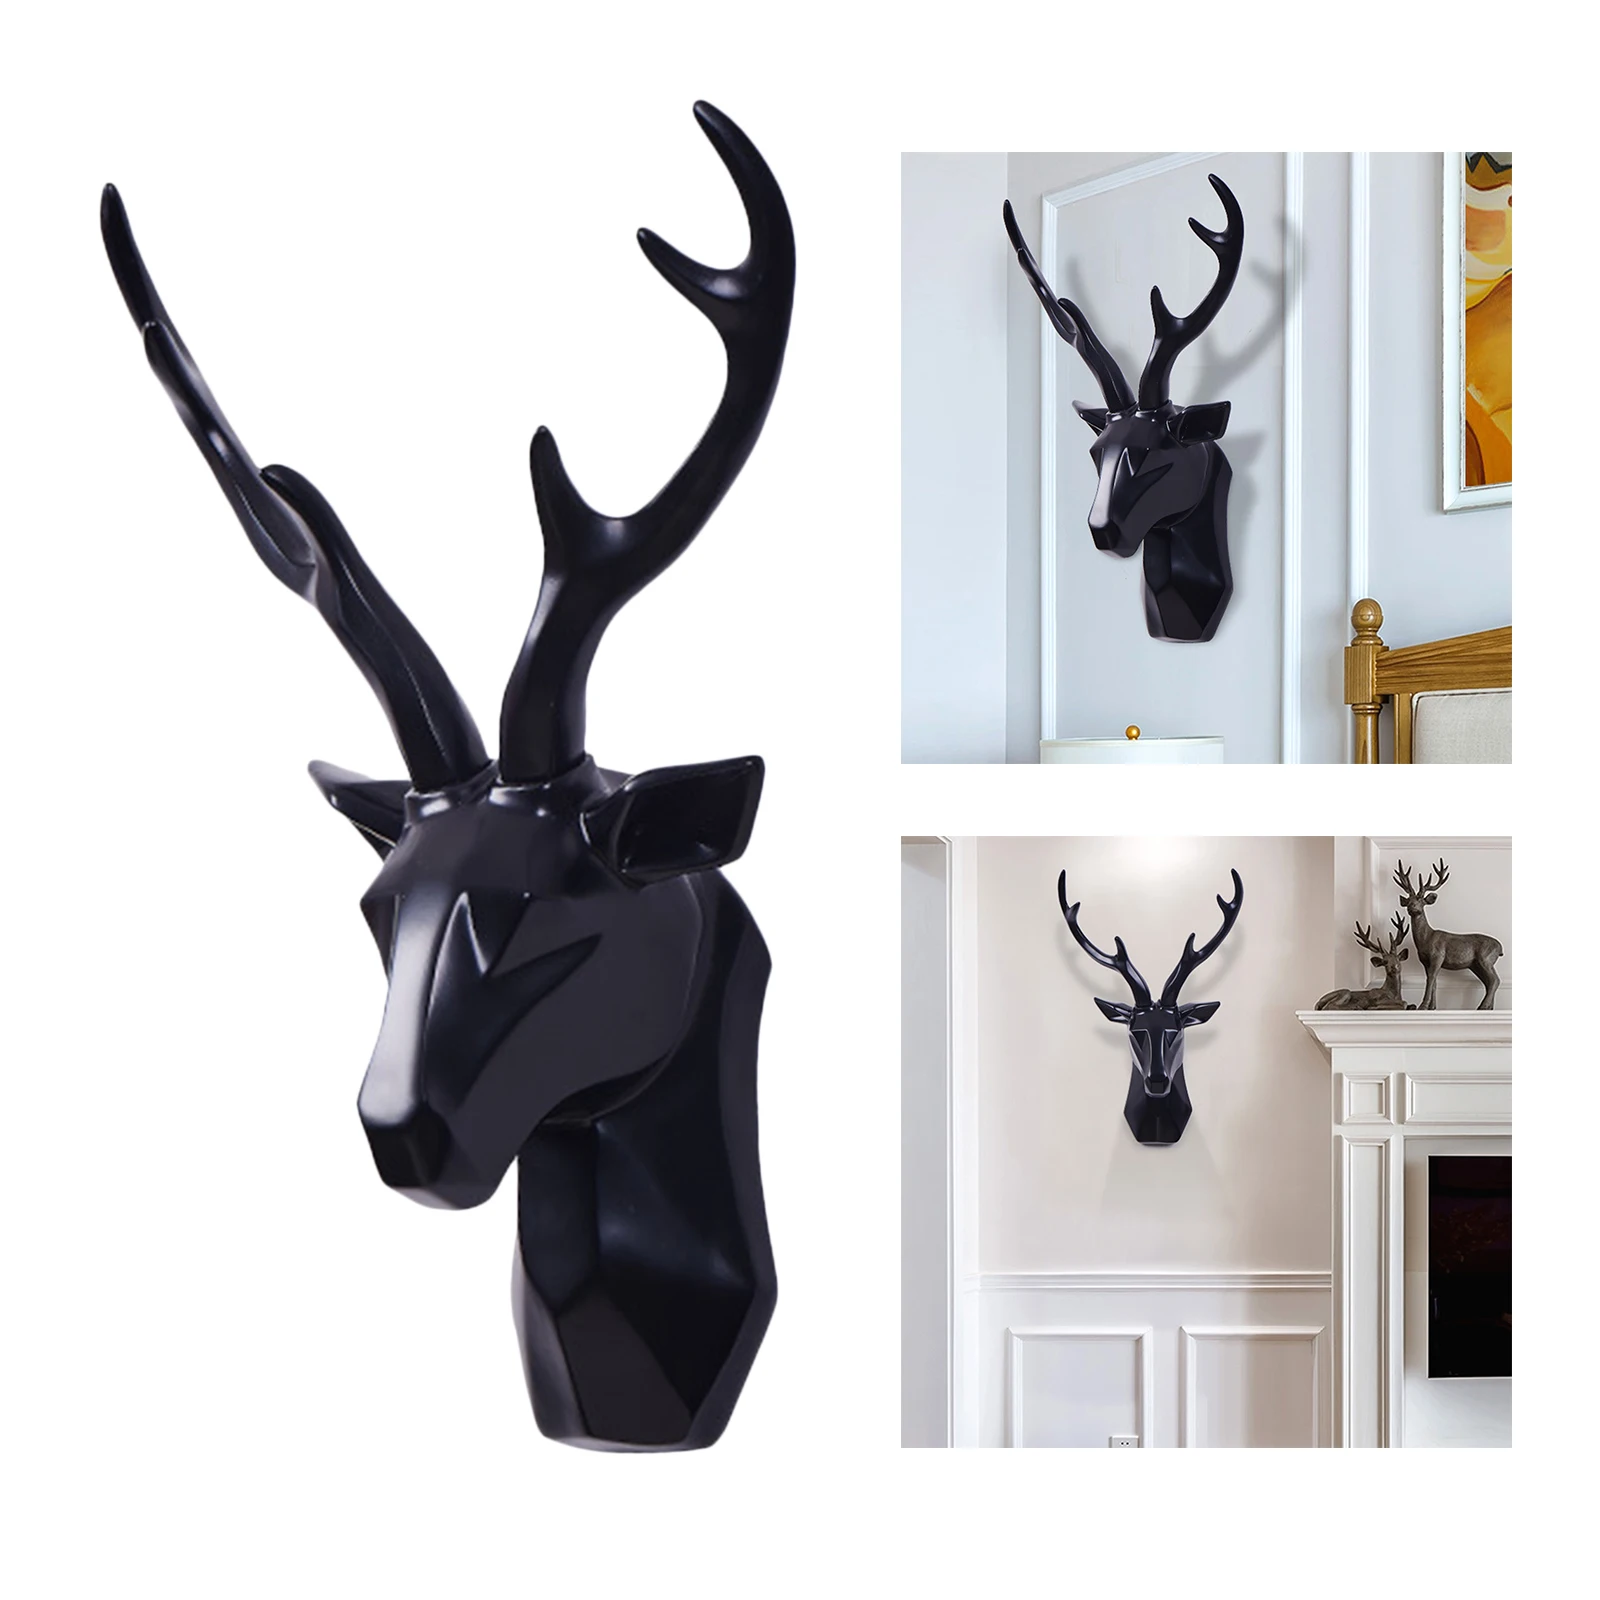 Deer Head Wall Sculpture Home Decor Living Room Cabinet Art Statue Ornaments